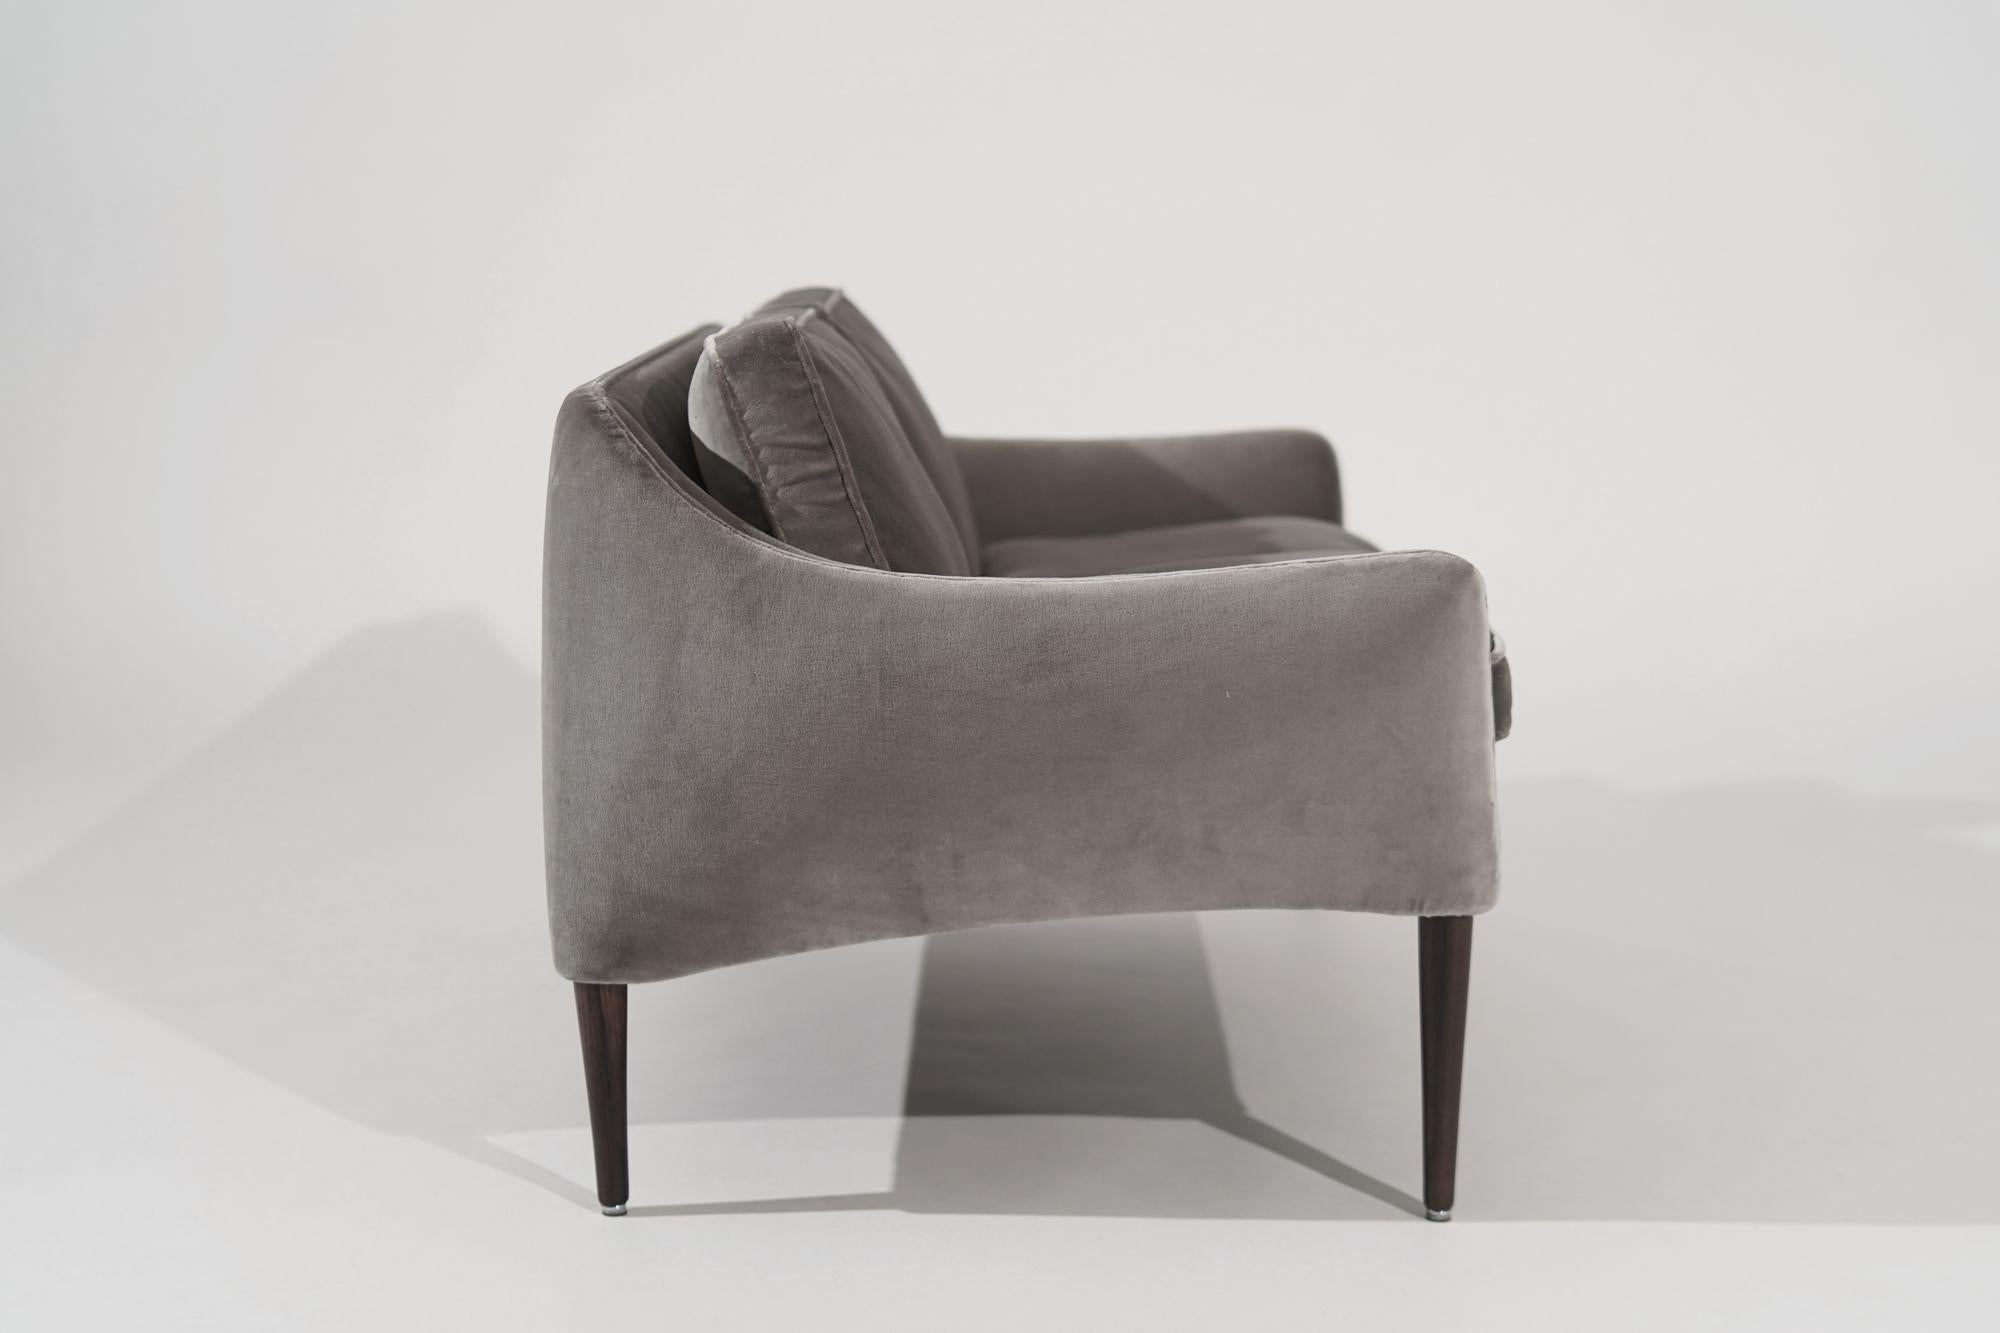 Un exquis fauteuil Hans/One, une pièce intemporelle de l'héritage du design danois des années 1960. Méticuleusement restaurée par Stamford Modern, cette causeuse emblématique présente une forme organique et de superbes pieds en bois de rose qui